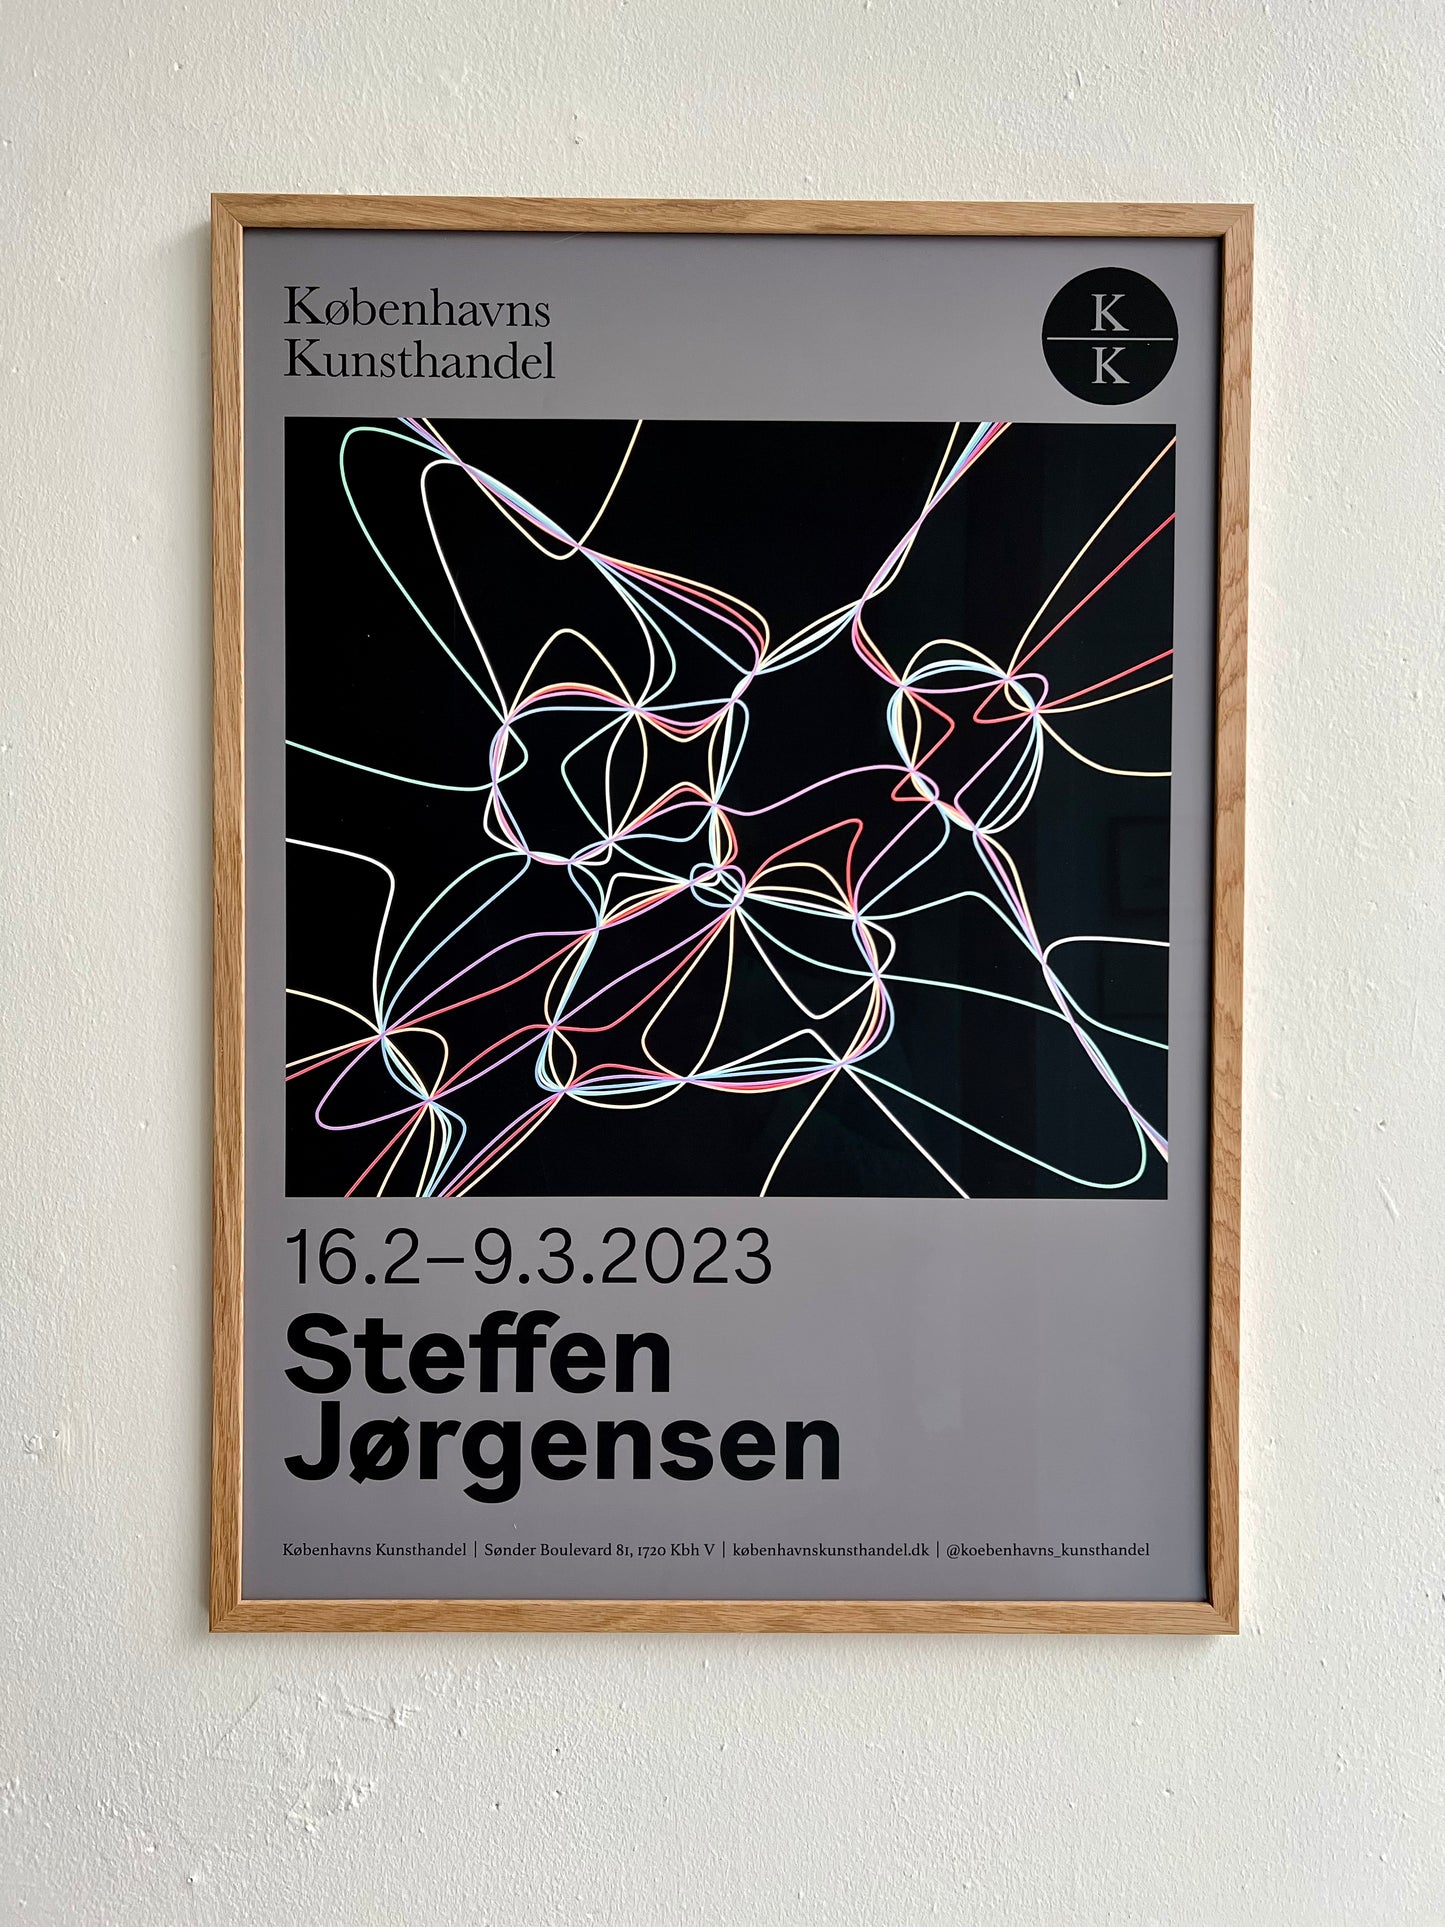 Steffen Jørgensen. Exhibition poster, 2023